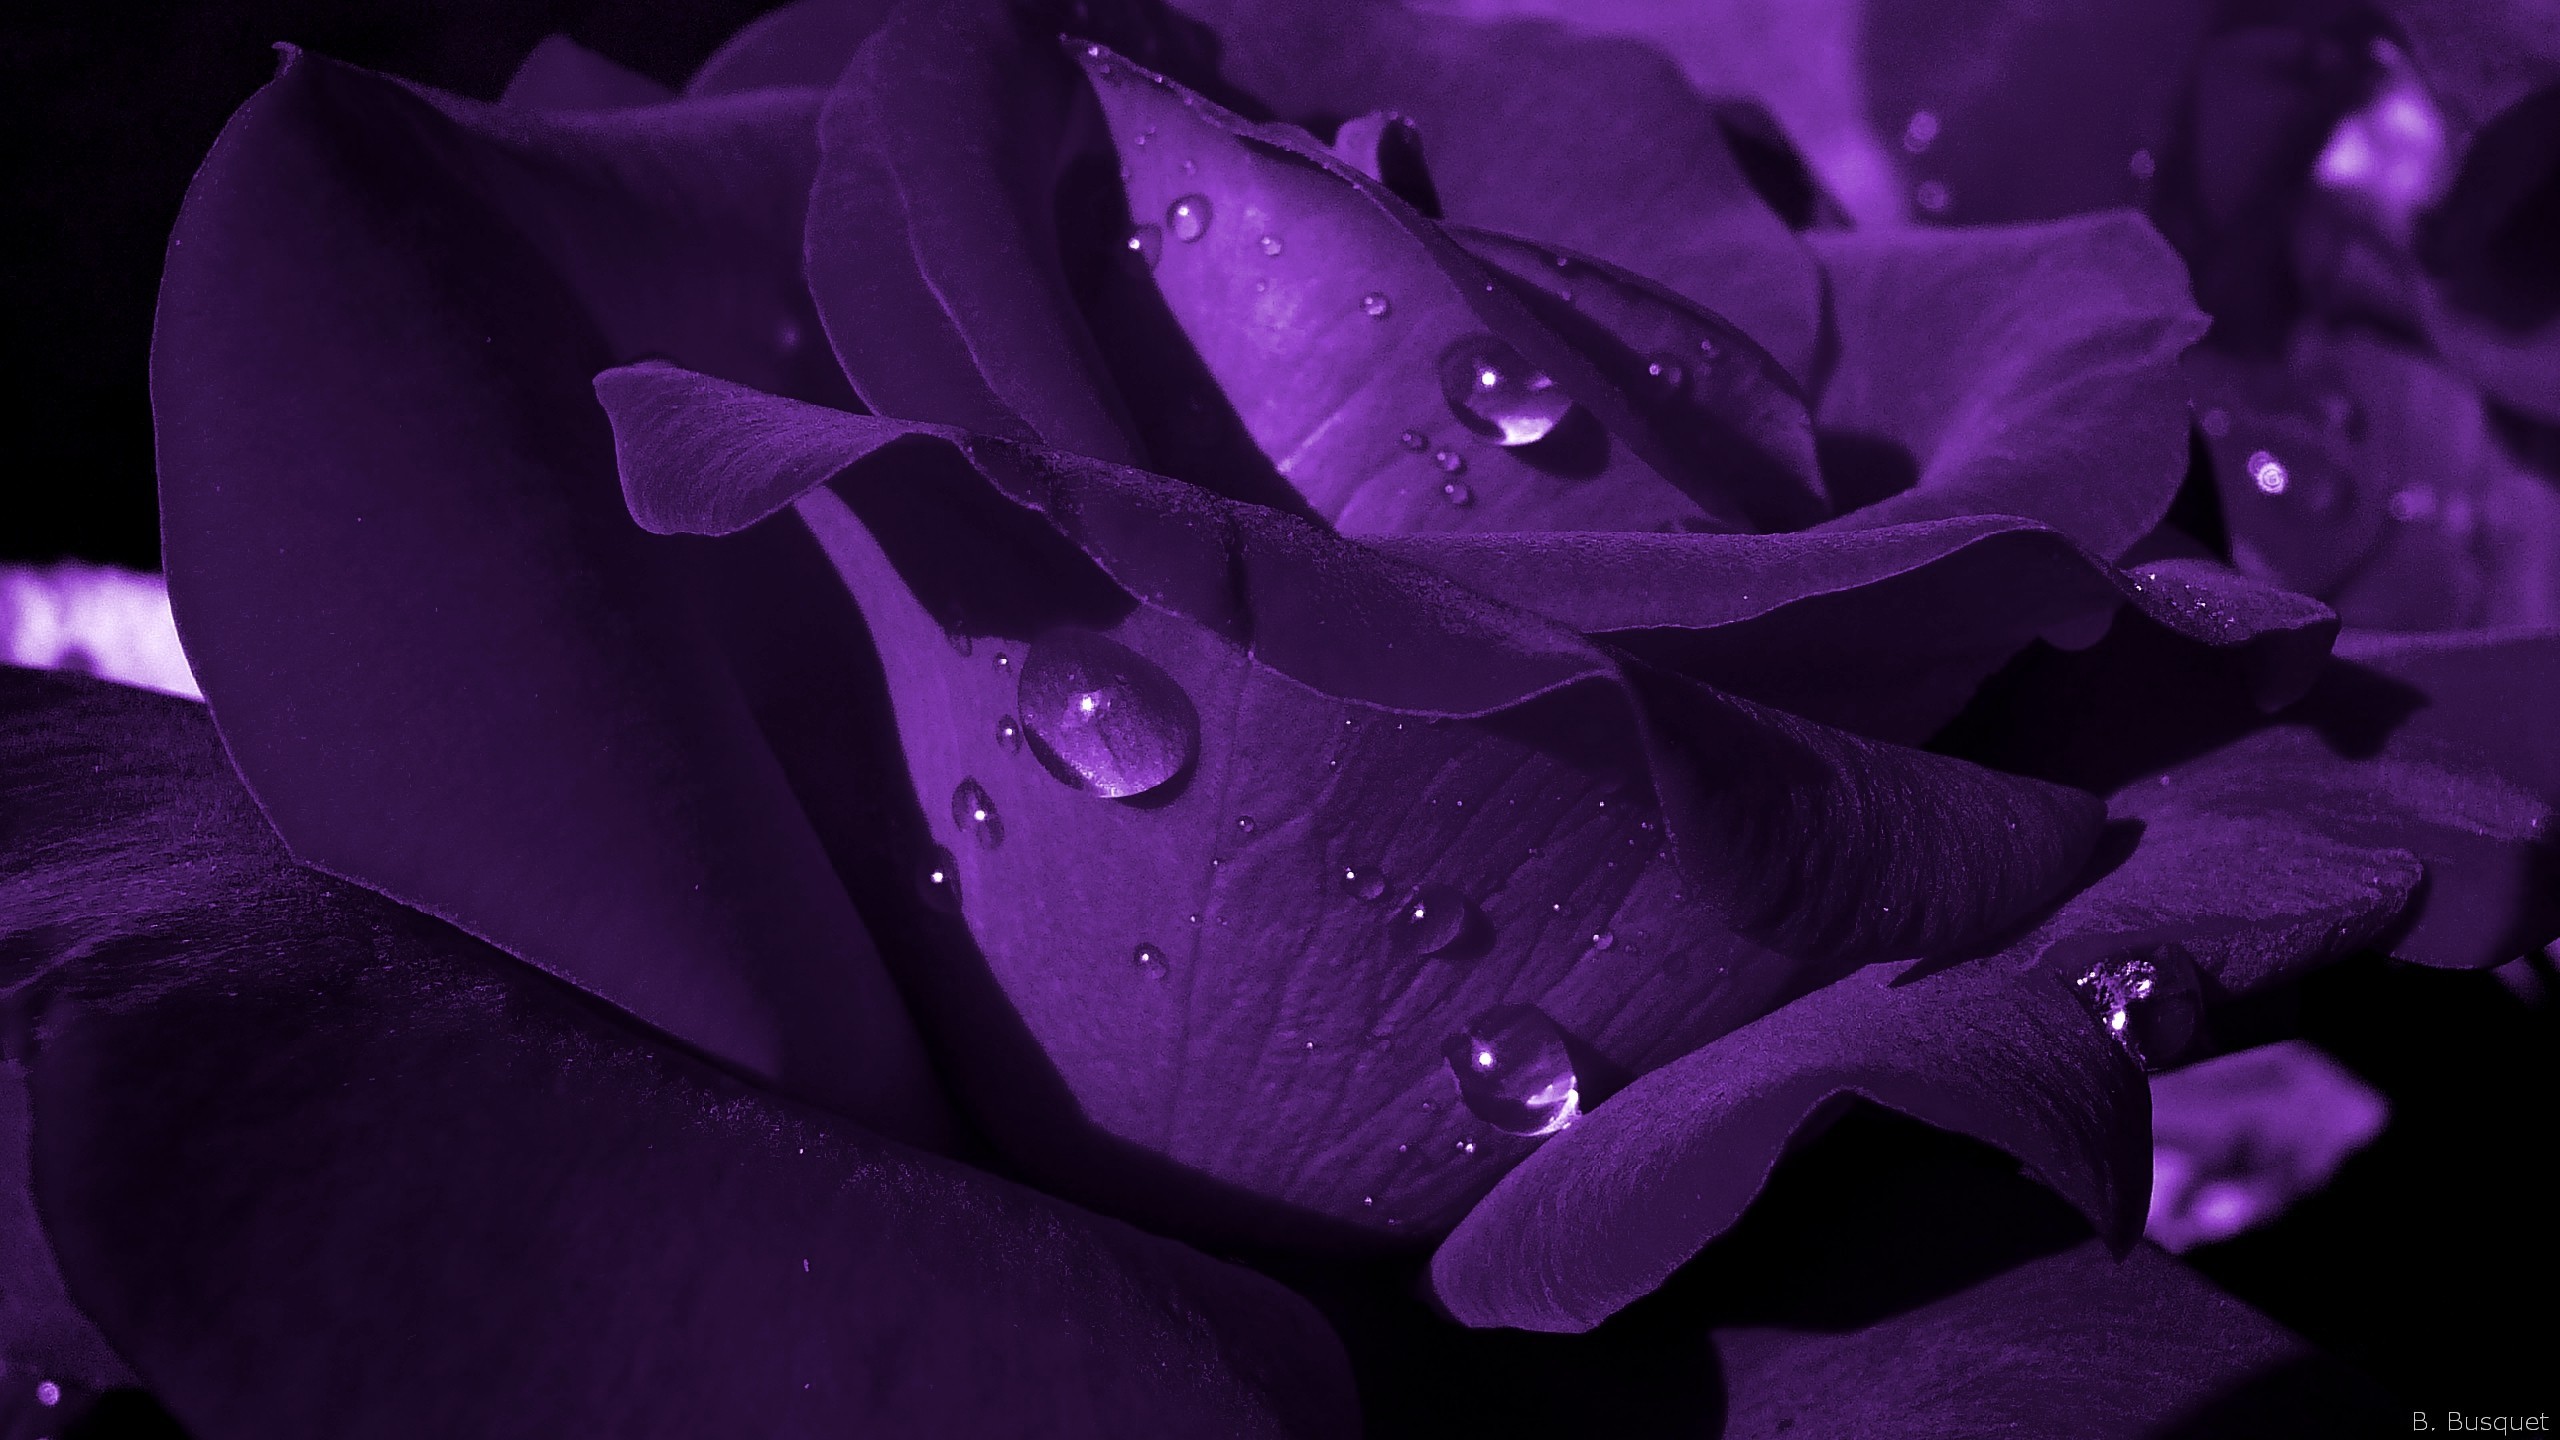 Comment porter le rose et le violet ? – THE COLOR FASHIONISTA